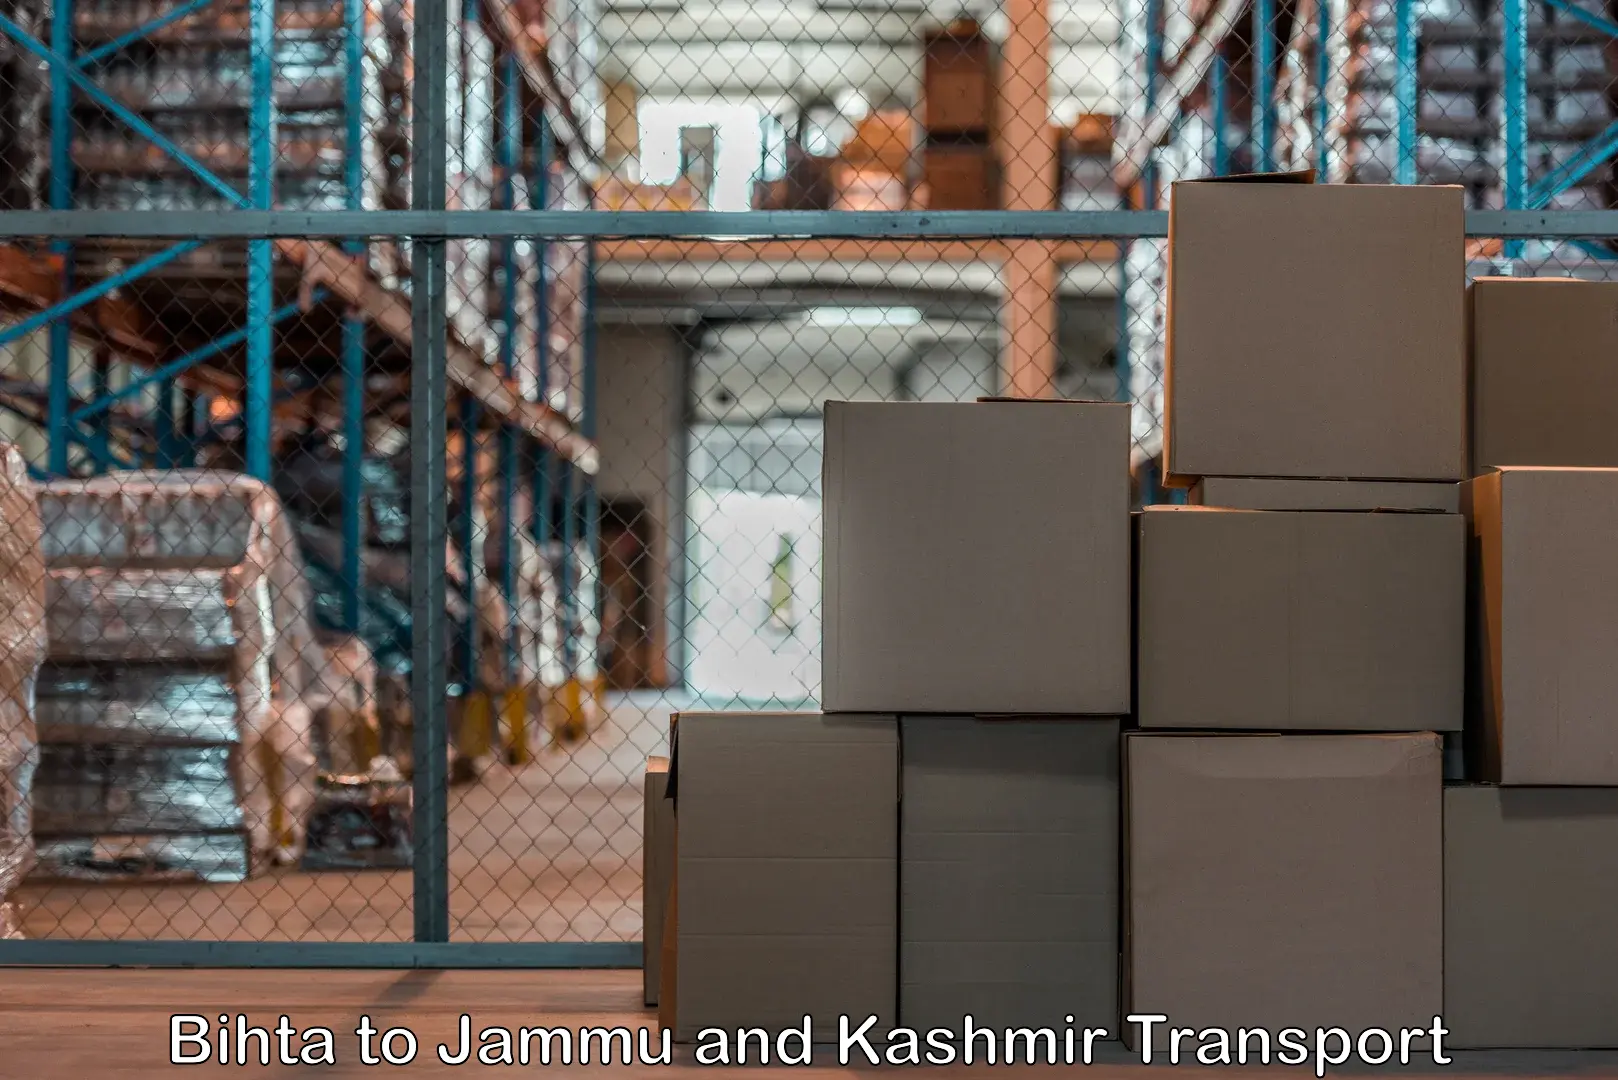 Pick up transport service Bihta to Jammu